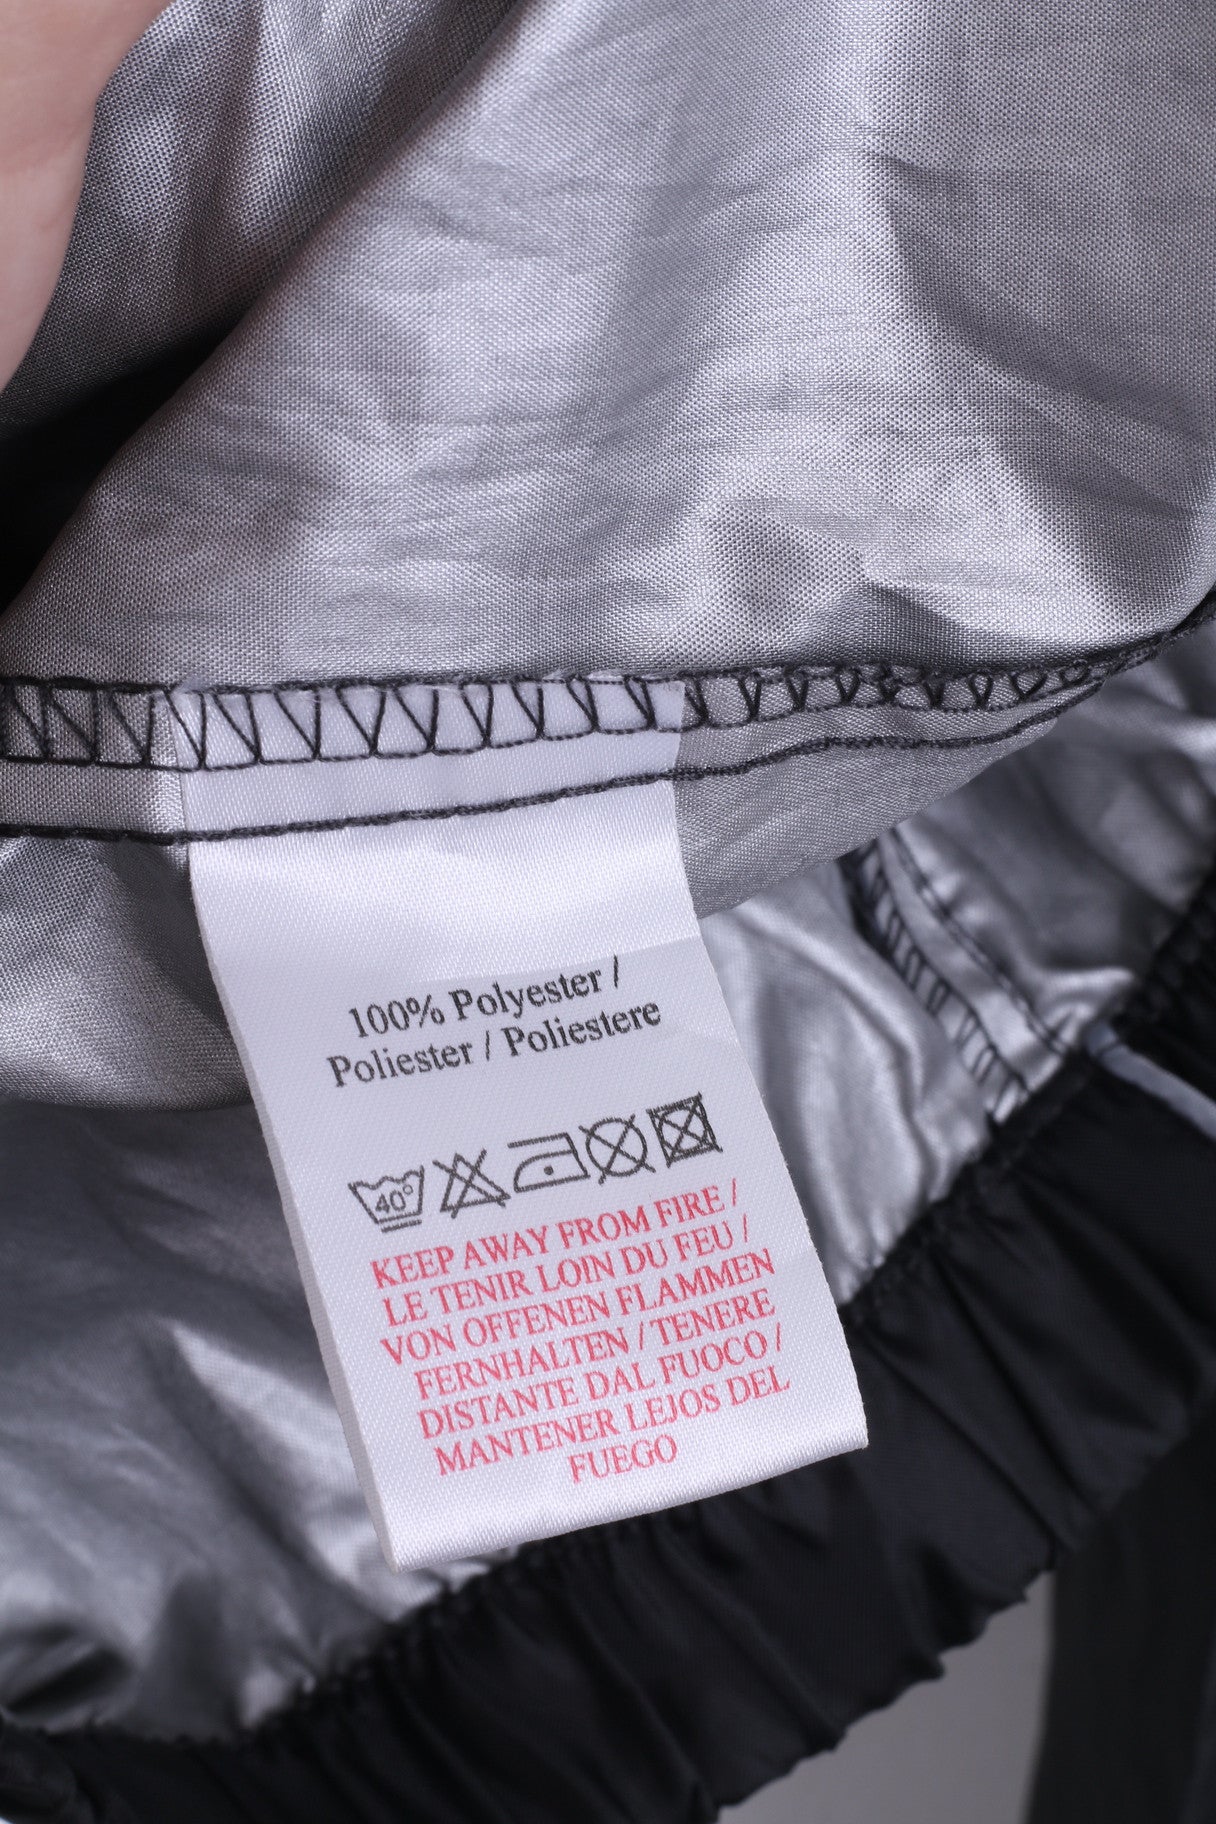 Umbro Boys XL Jacket Track Top Black Hood Zip Neck - RetrospectClothes